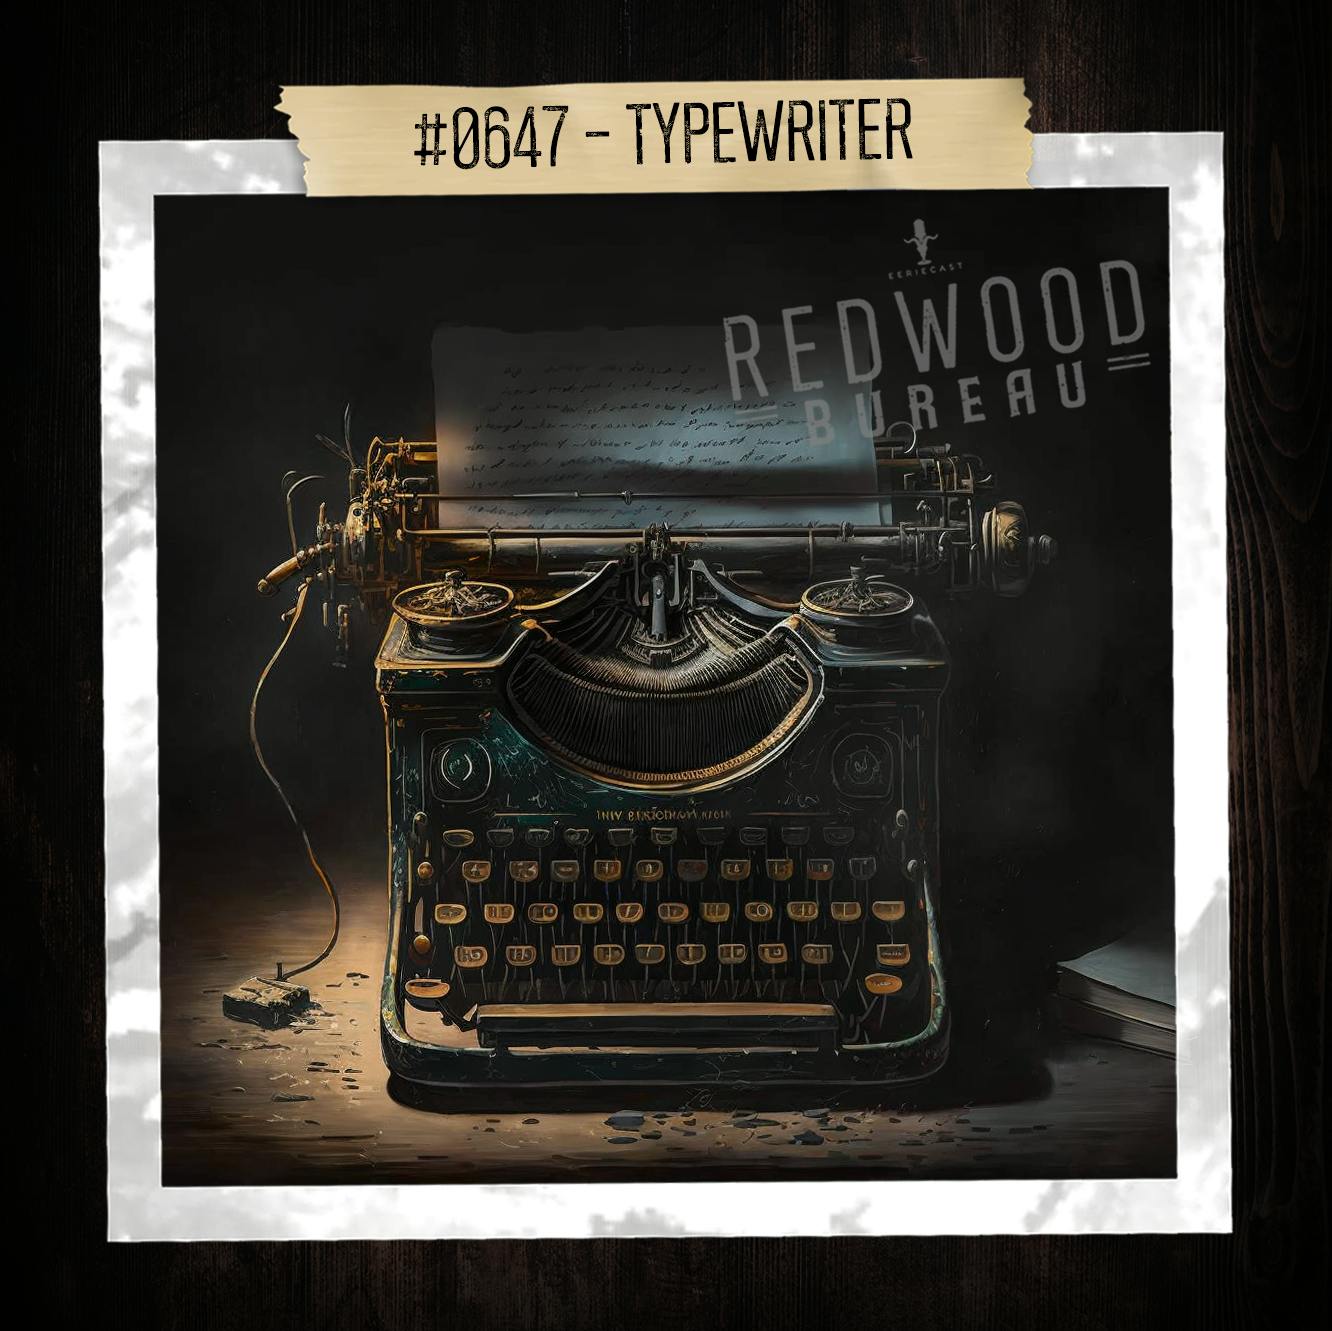 "TYPEWRITER" - Redwood Bureau Phenomenon #0647